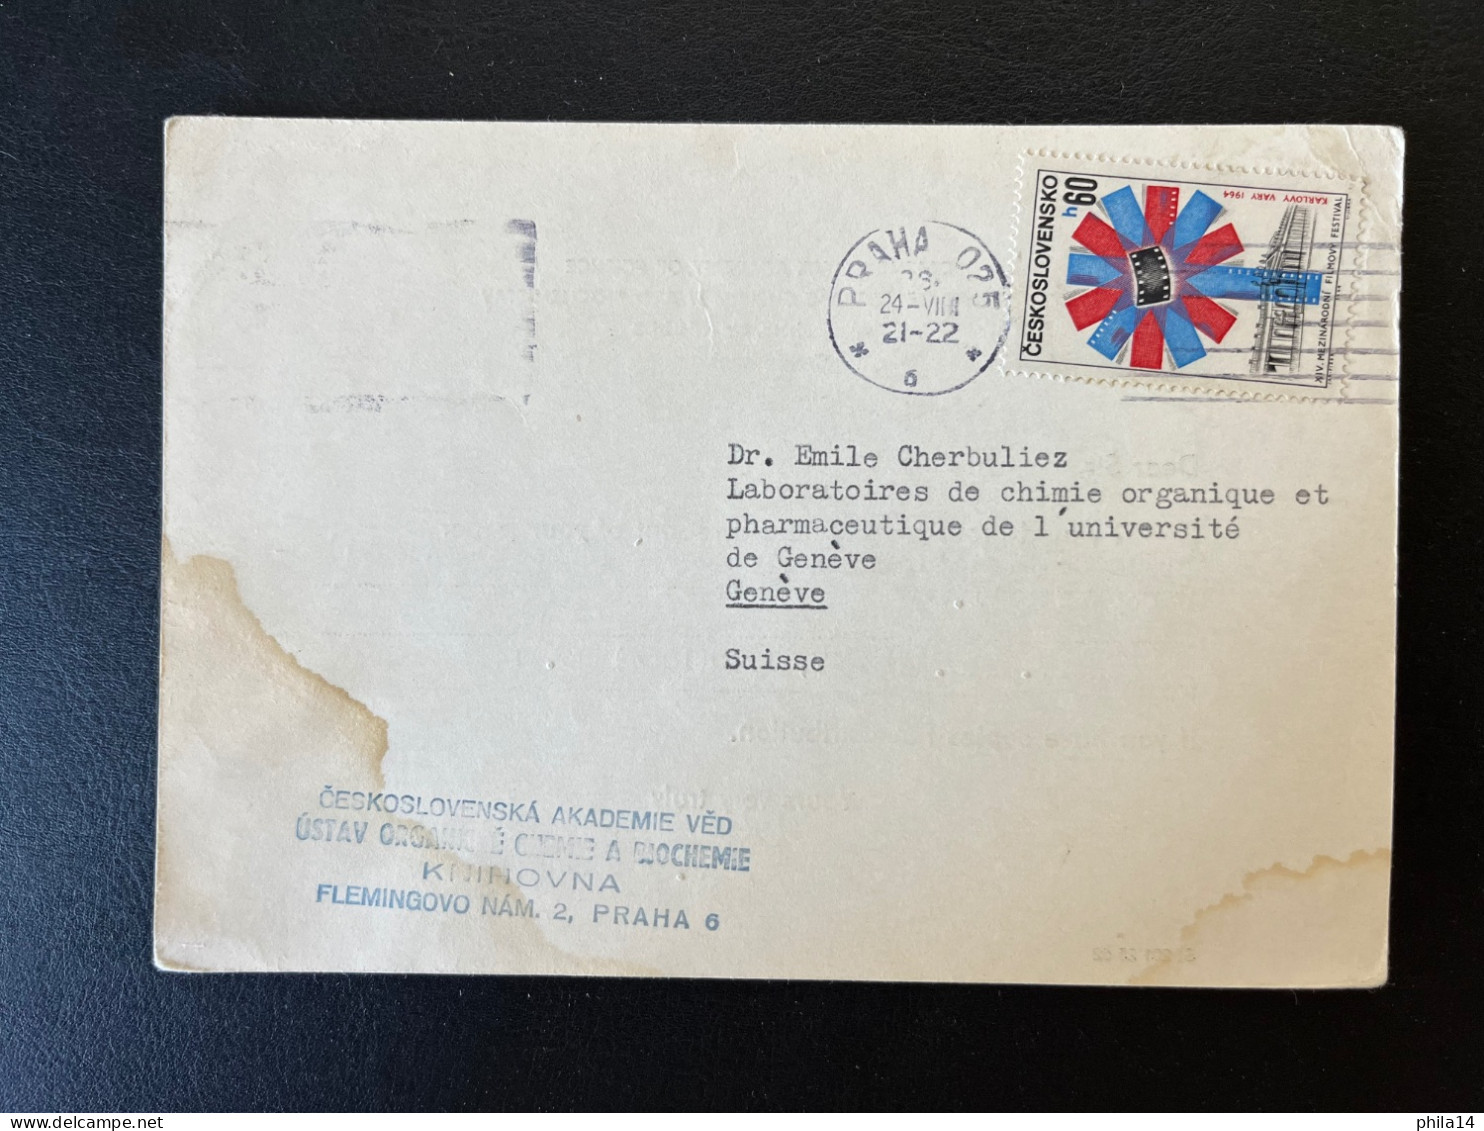 CARTE TCHECOSLOVAQUIE / PRAGUE PRAHA POUR GENEVE SUISSE 1964 / CZECHOSLOVAK ACADEMY OF SCIENCE - Briefe U. Dokumente